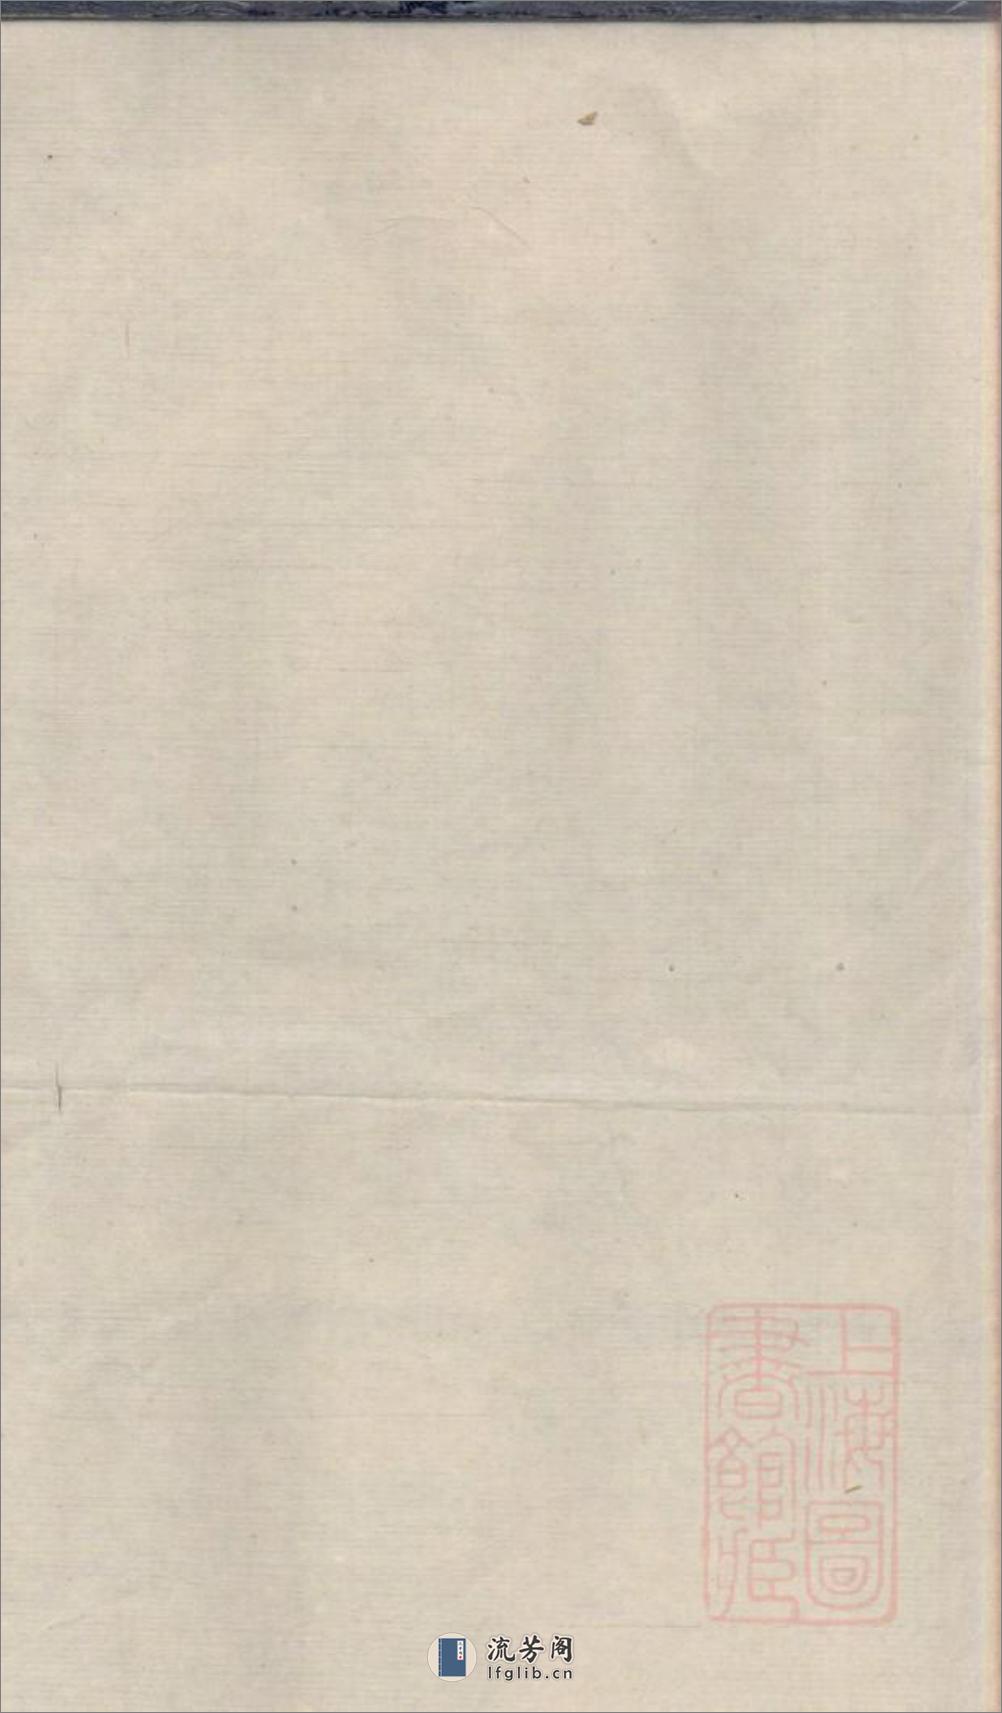 平原[陆氏]宗谱_001 - 第1页预览图